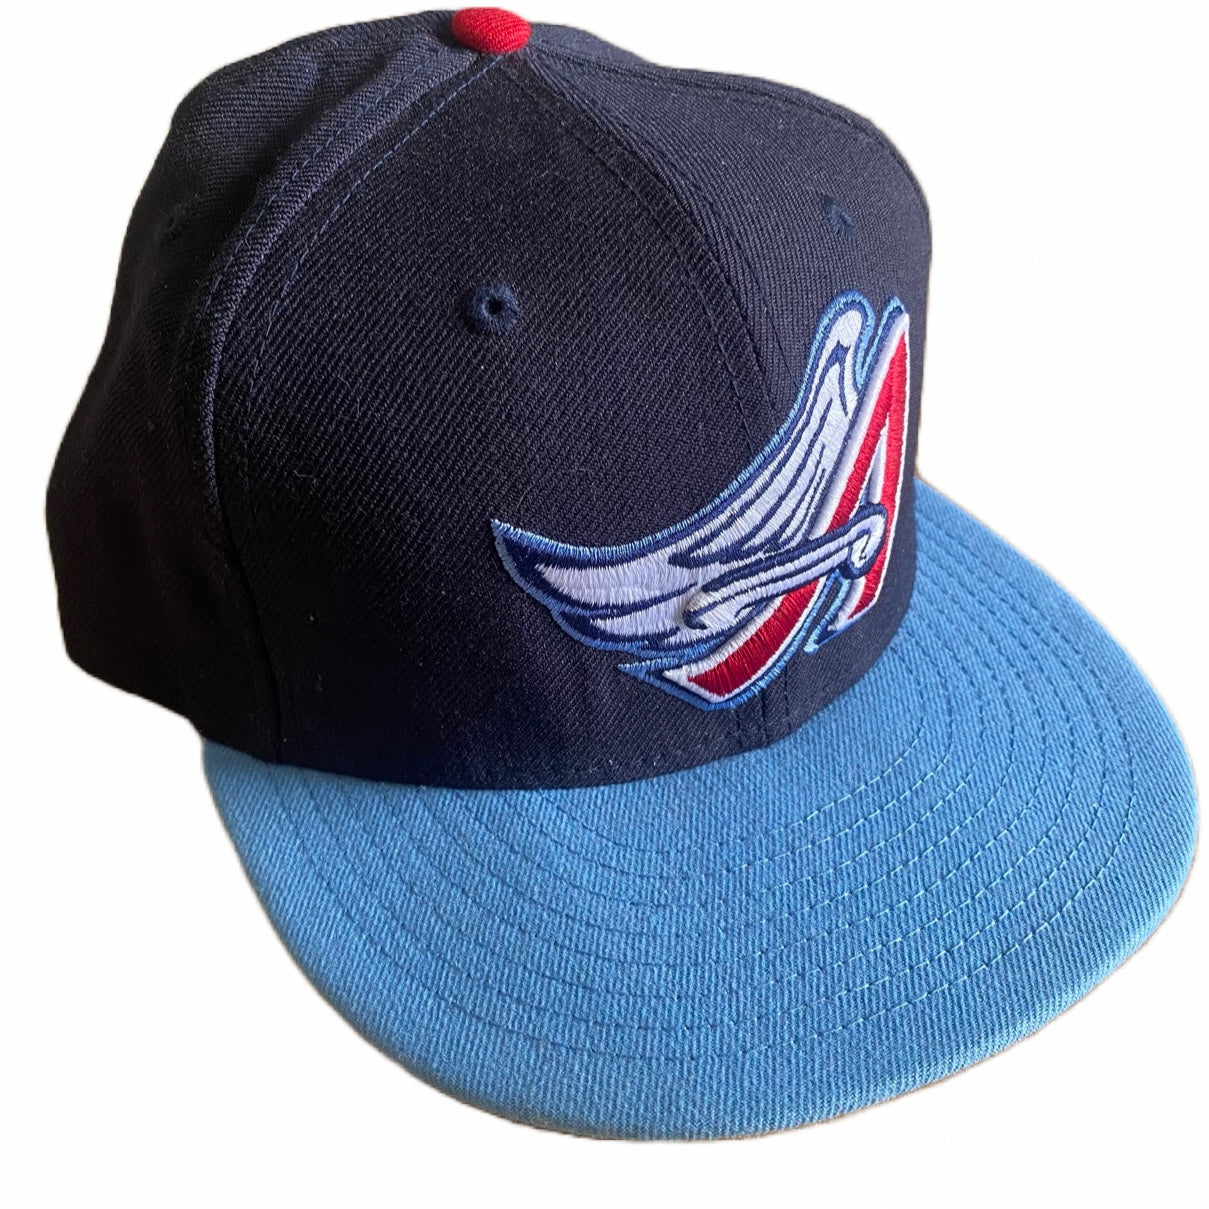 Secondhand New Era Anaheim Angels Hat